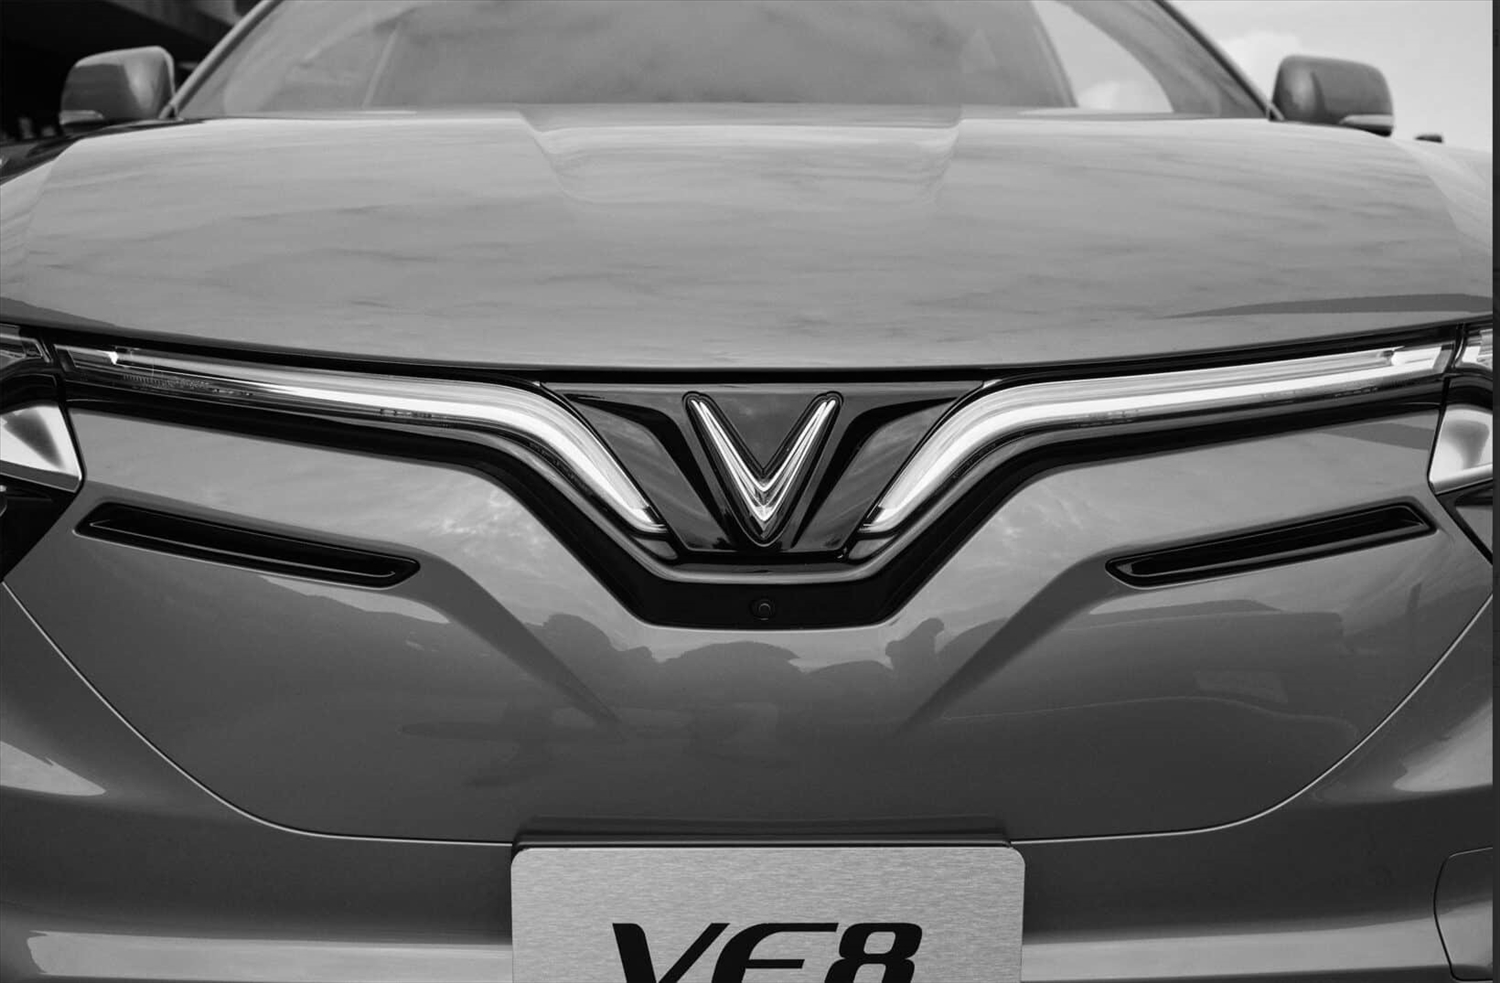 Phần đầu xe độc đáo nổi bật bởi dải đèn đặc trưng của thương hiệu chạy thành chữ “V” ở trung tâm